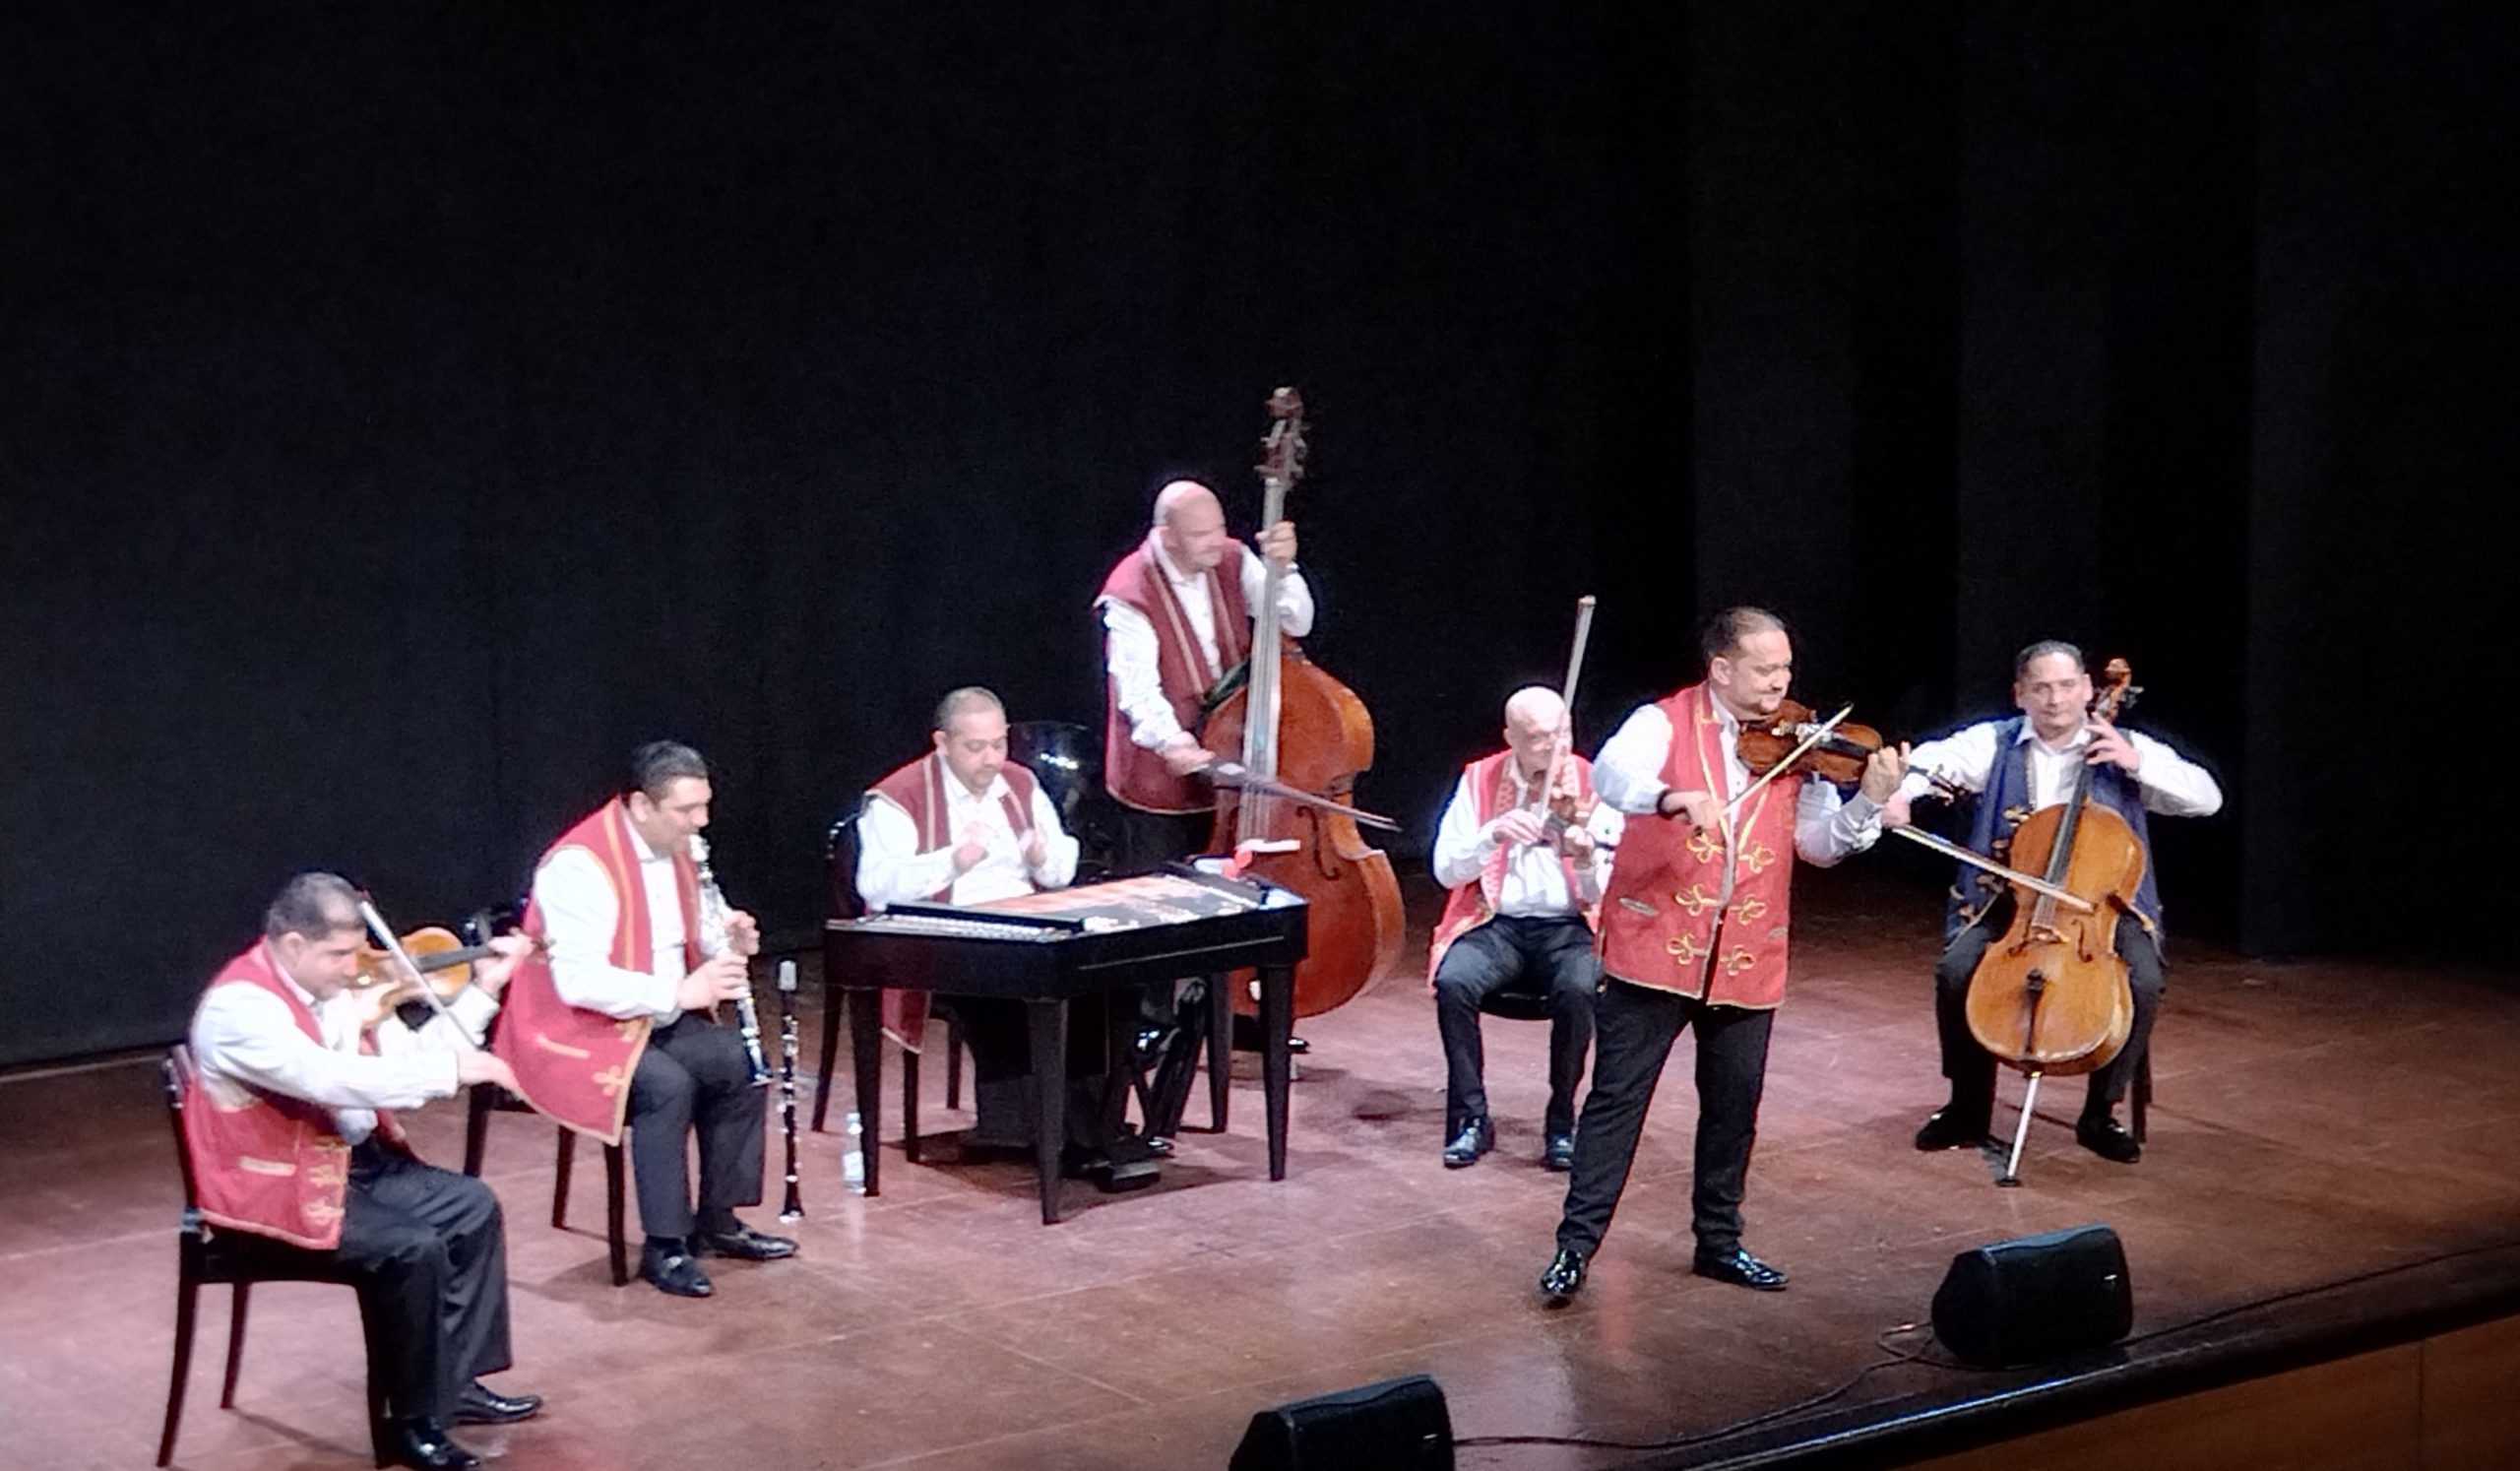 Bari – Al Teatro Forma, ritmi infuocati con la scatenata formazione di Budapest